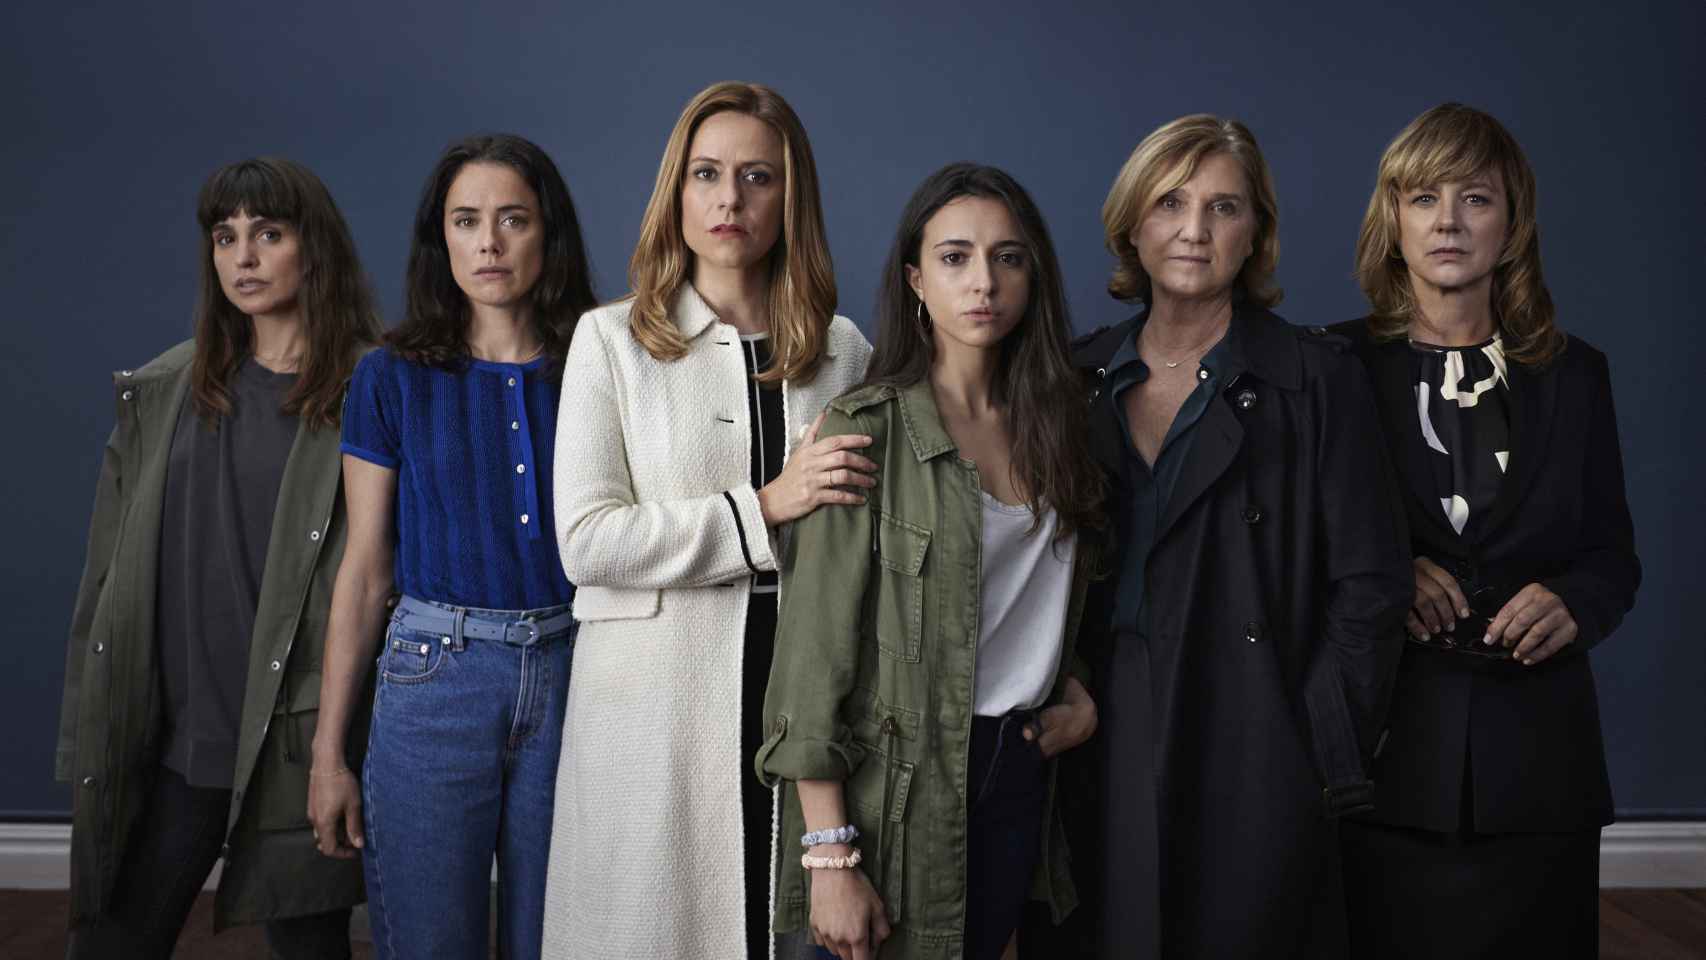 Verónica Echegui, Patricia López Arnaiz, Itziar Ituño, Yune Nogueira, Ana Wagener y Emma Suárez,  protagonistas de 'Intimidad'.